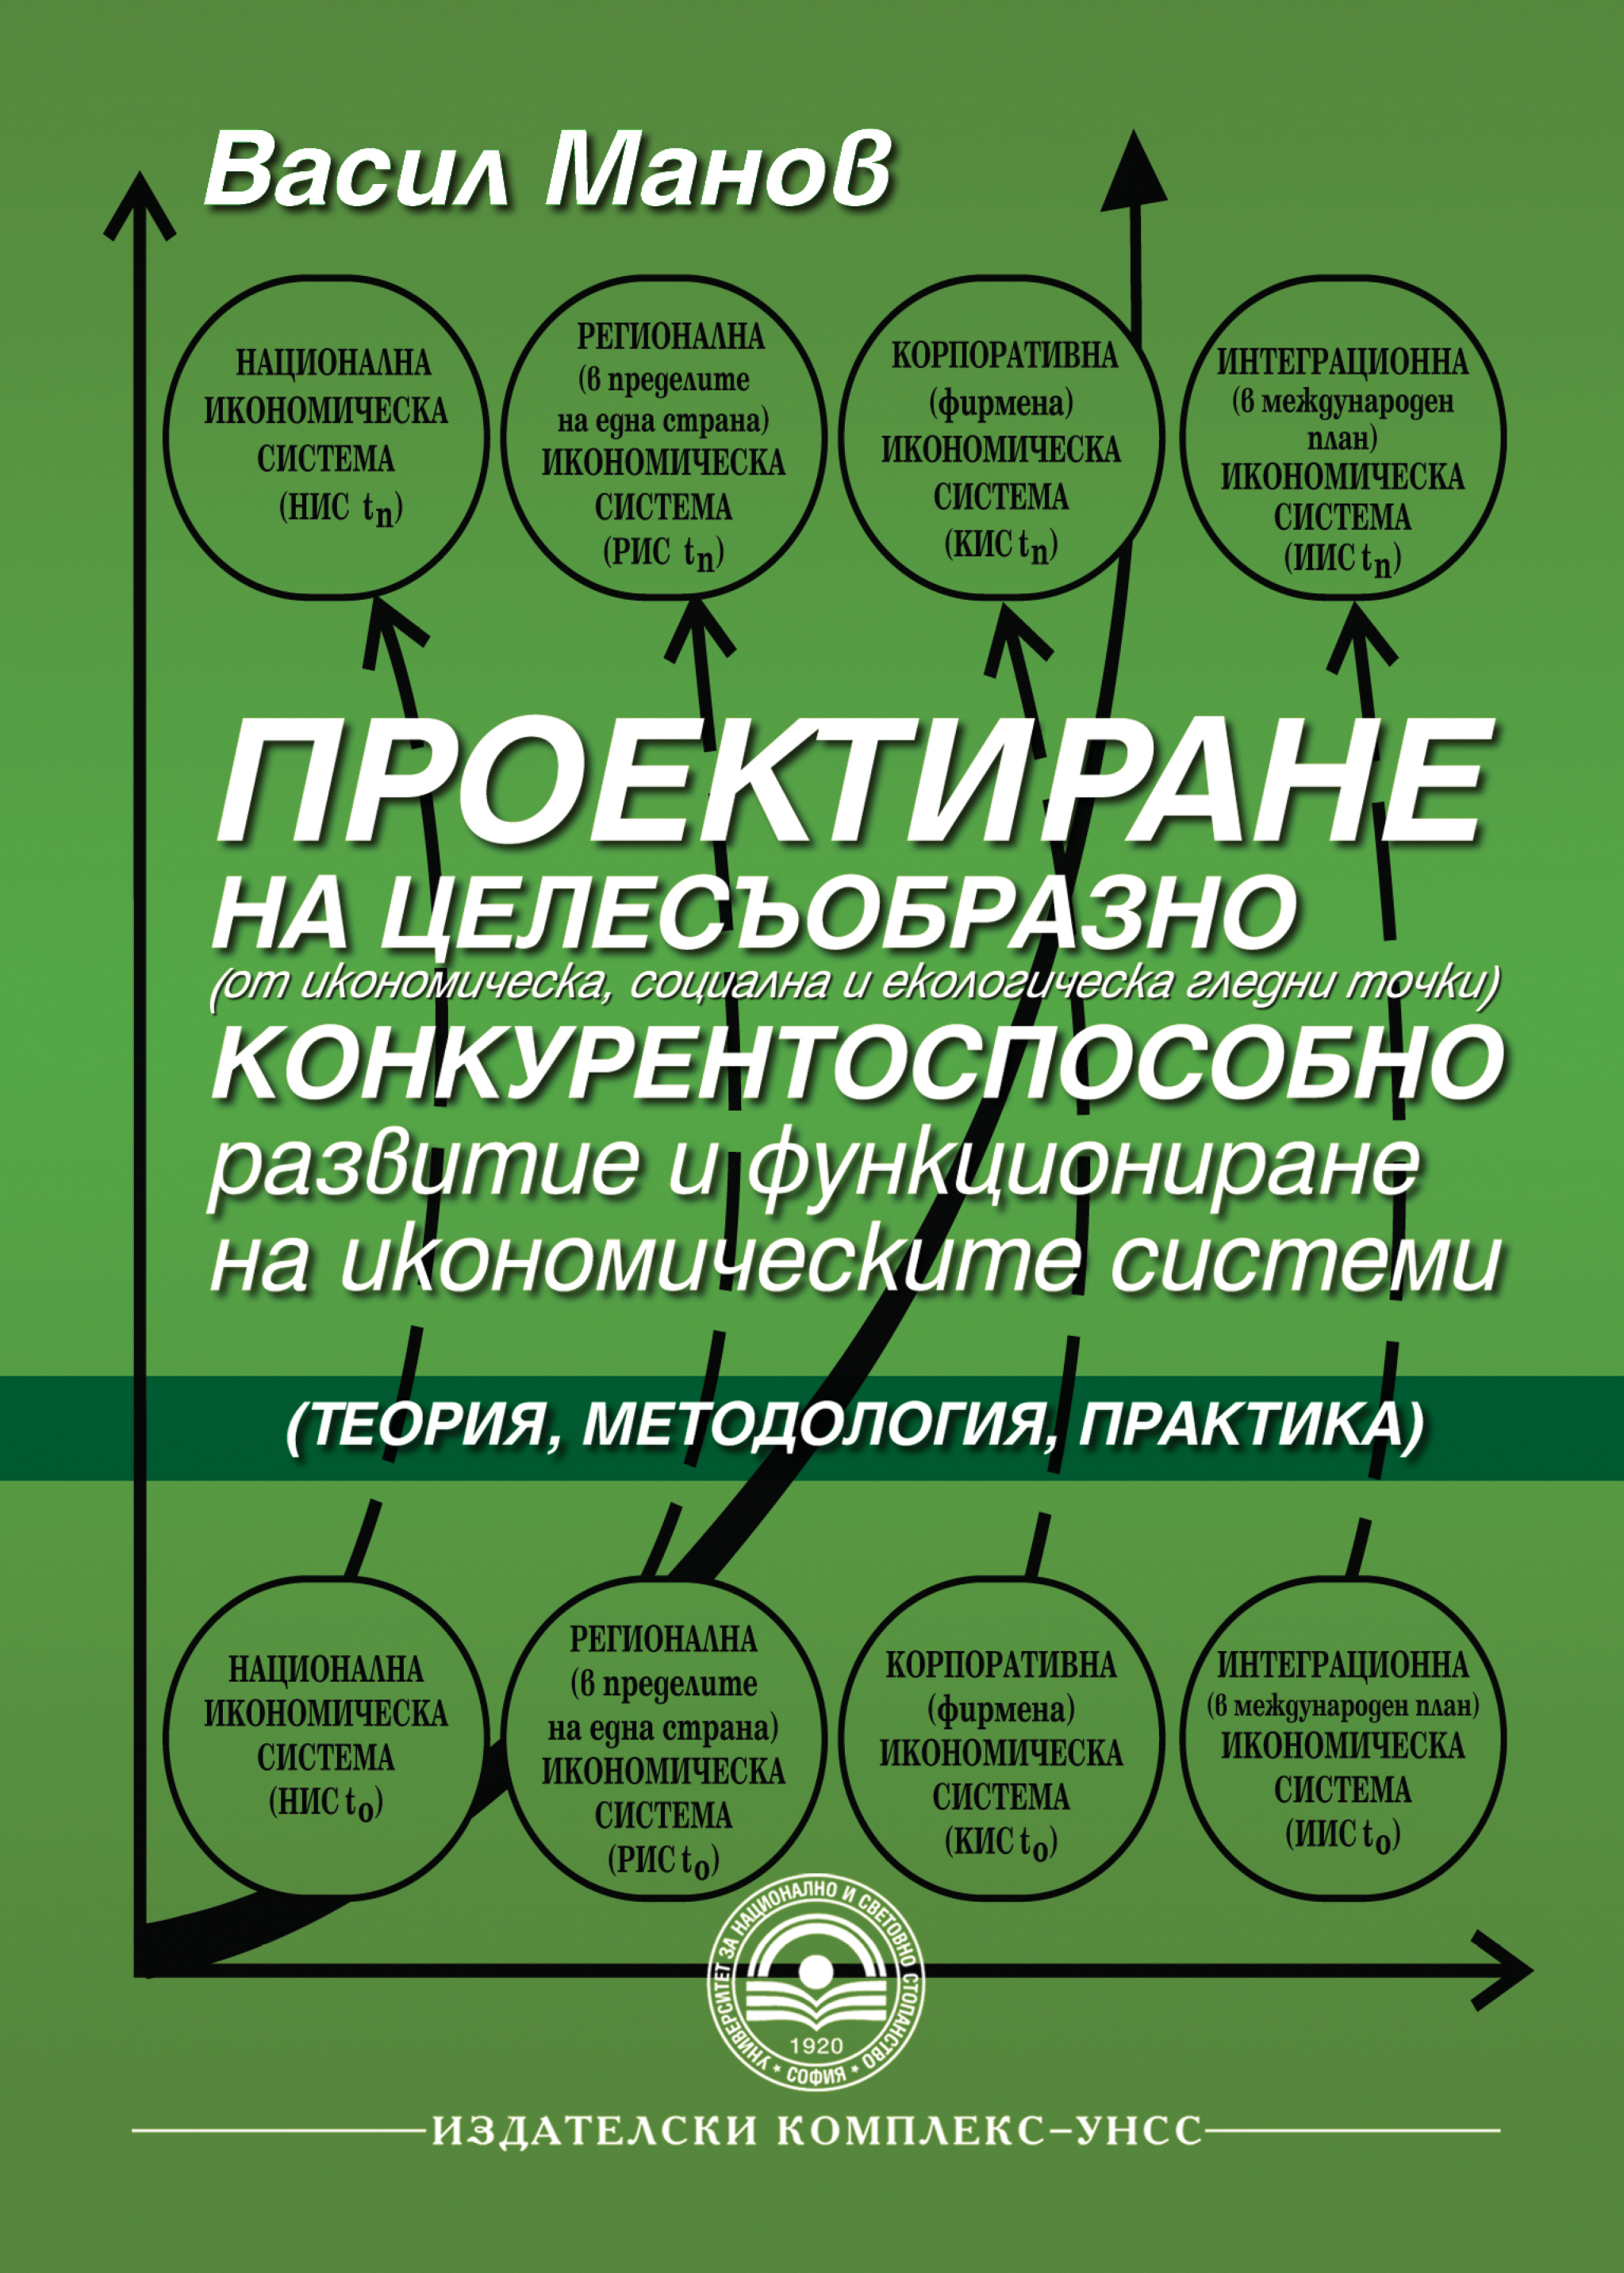 http://books.unwe.bg/wp-content/uploads/2015/10/Vasil.Manov_TEORIA.METODOLOGIA.PRAKTIKA.na_.proektiraneto.na_.celesaobrazno.jpg